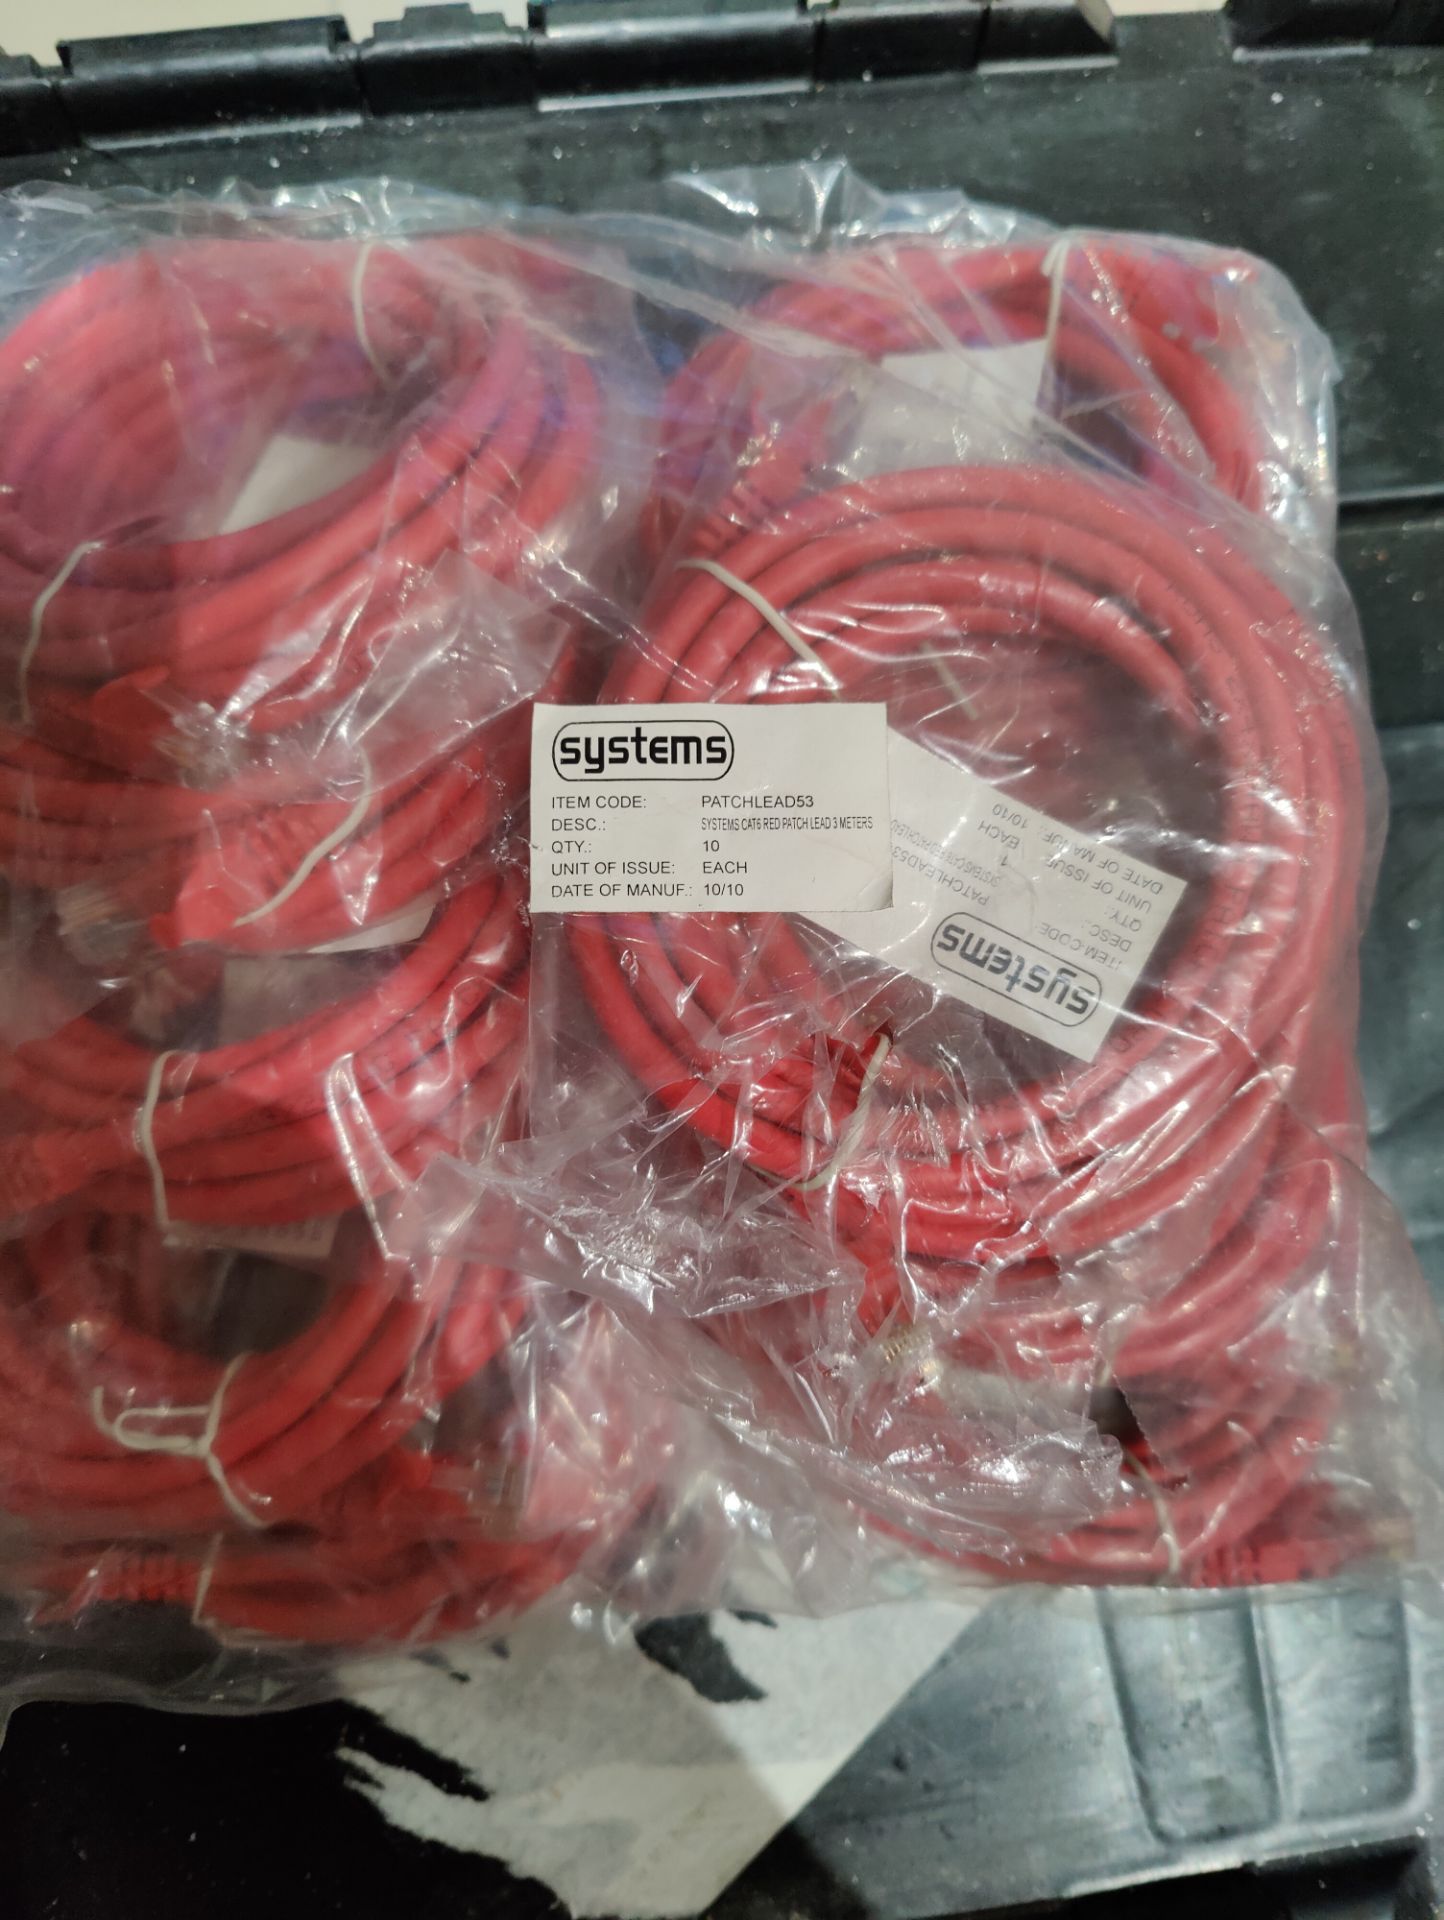 10 x Connekt Gear 3M RJ45 Netork Cable (Red) - Image 2 of 2